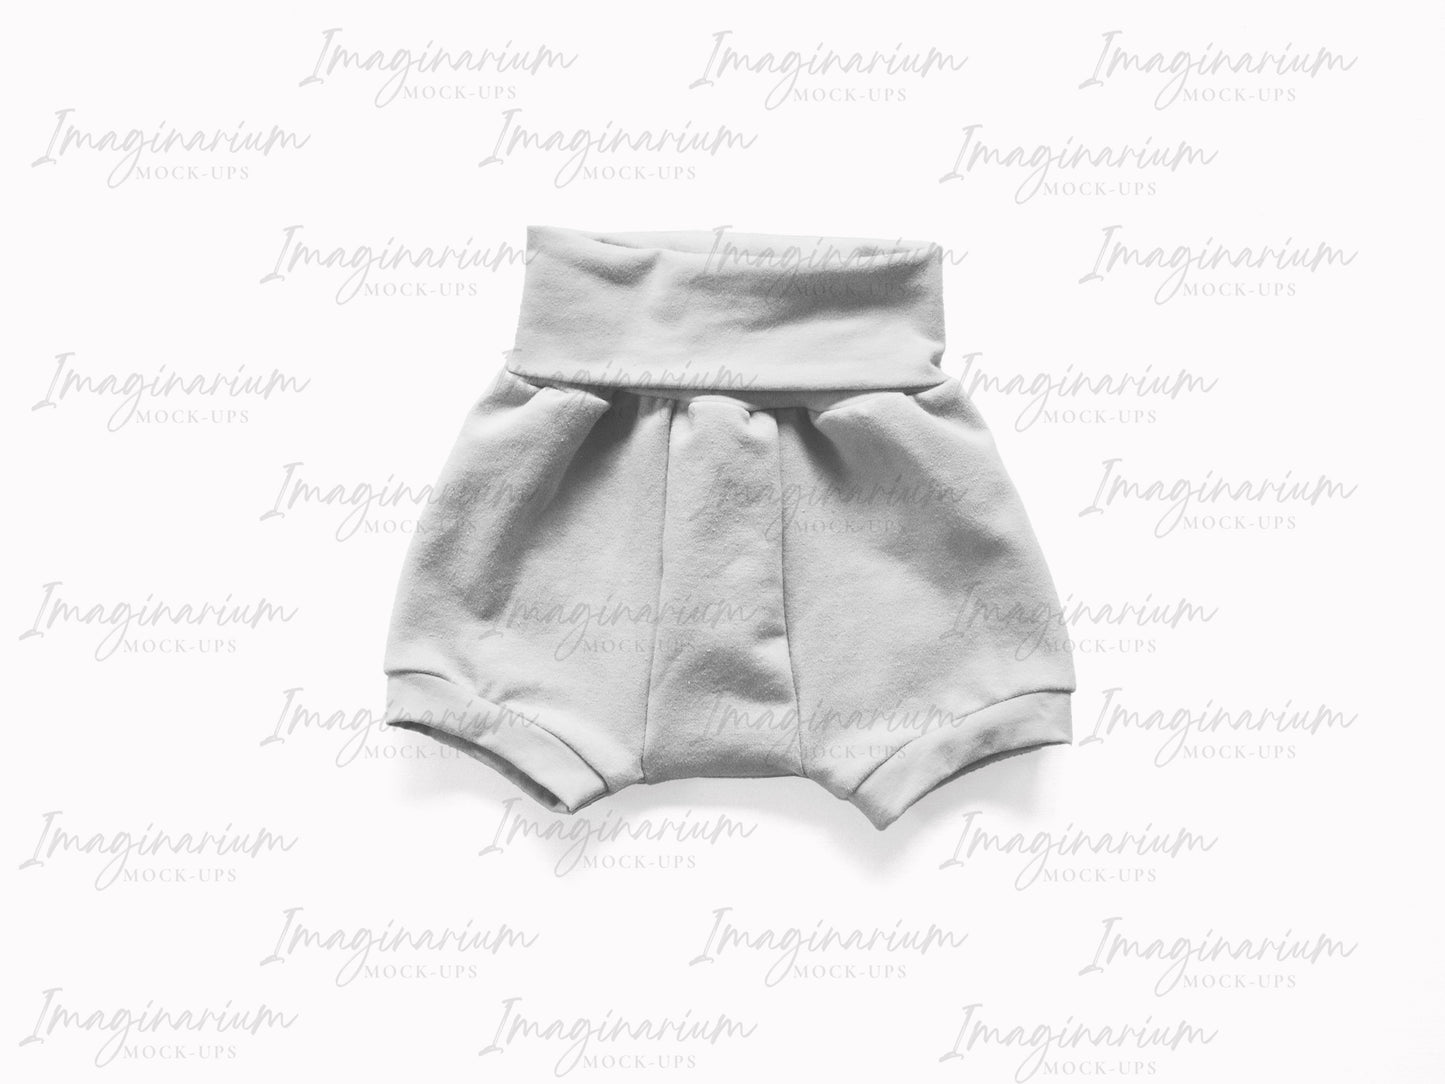 Baby Wrap Set Shorts Mock-up, Realistic Clothing Mockup for Procreate and Photoshop